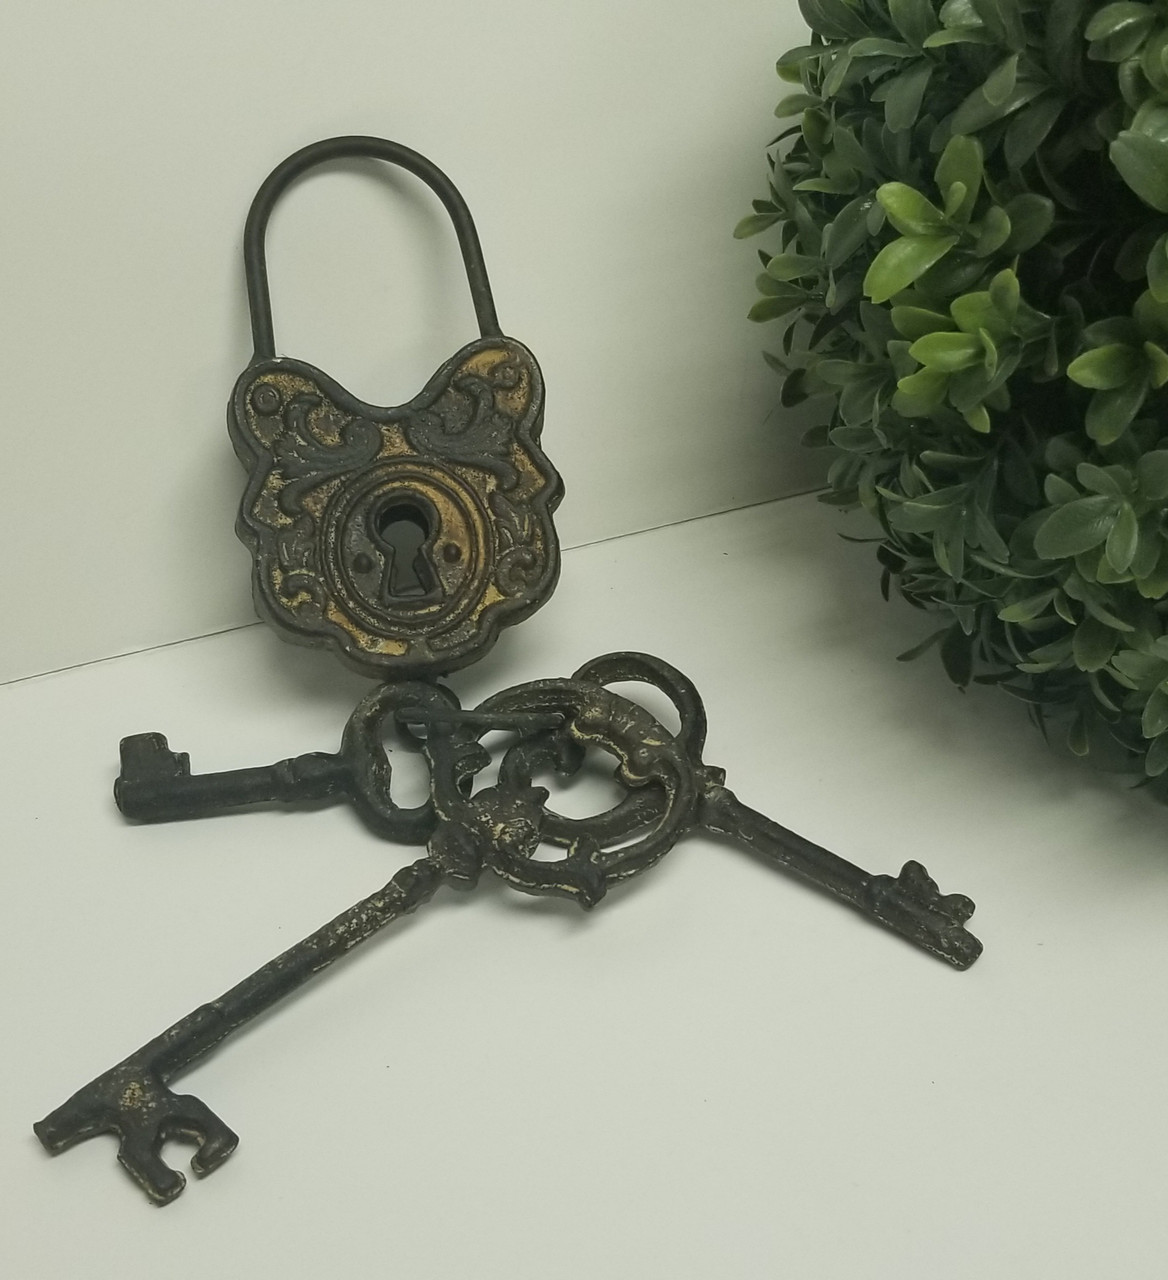 Old Key Antique Keys 1960 Vintage Keys Rustic Keys Vintage Keys Collectibles